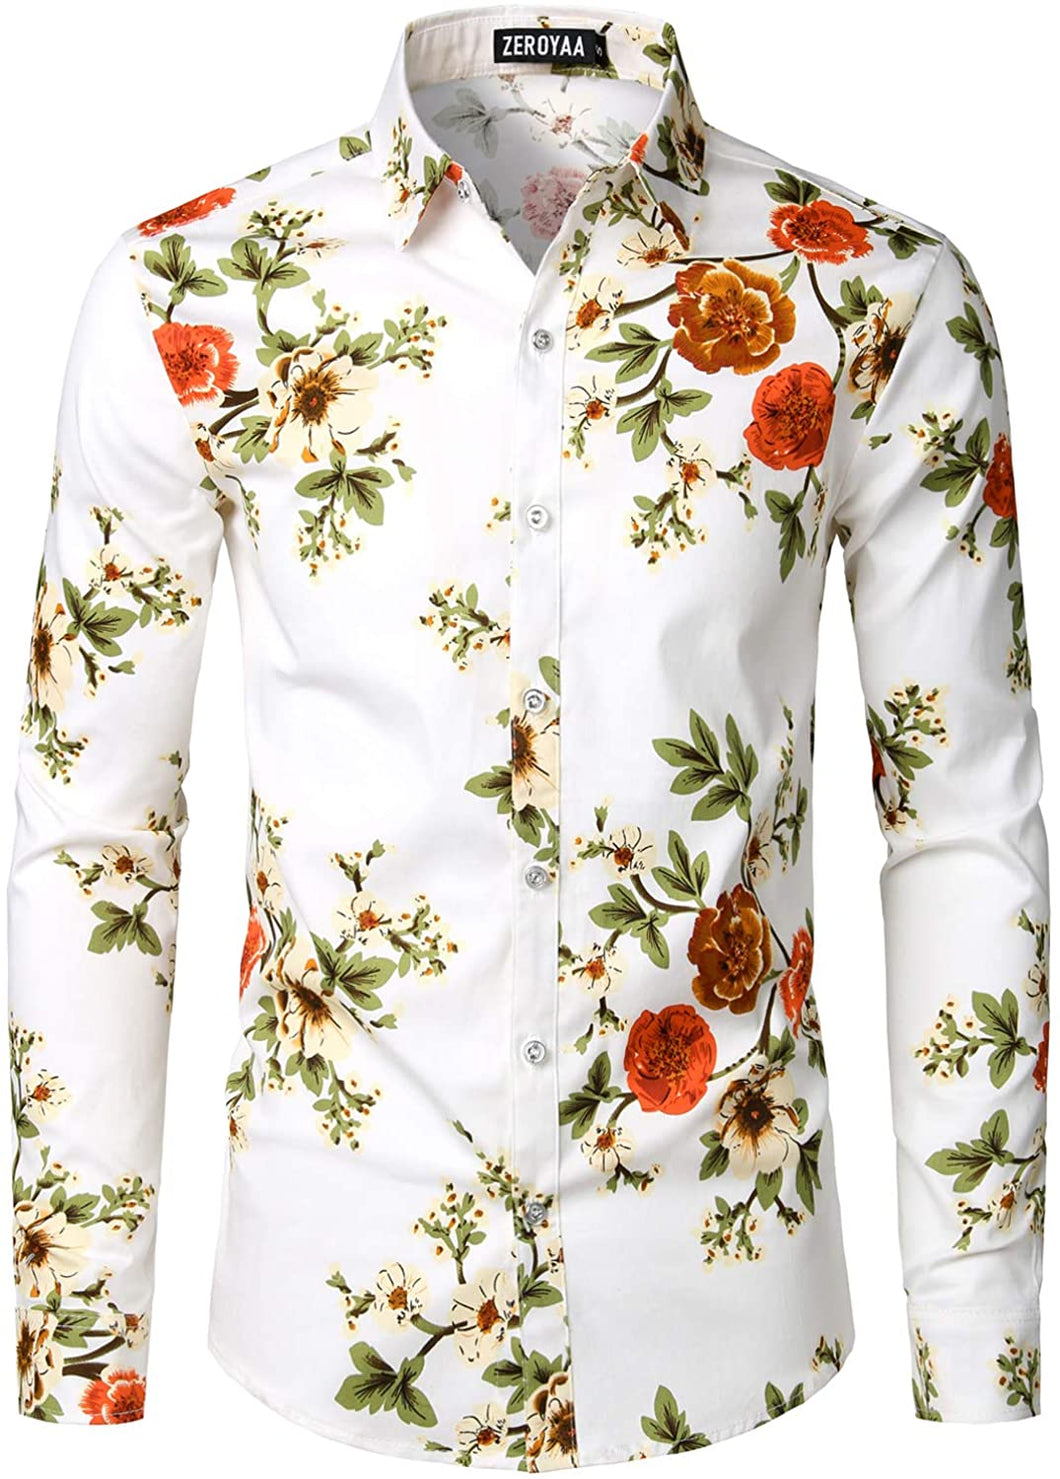 Men's White Floral Slim Fit Long Sleeve Cotton Shirt